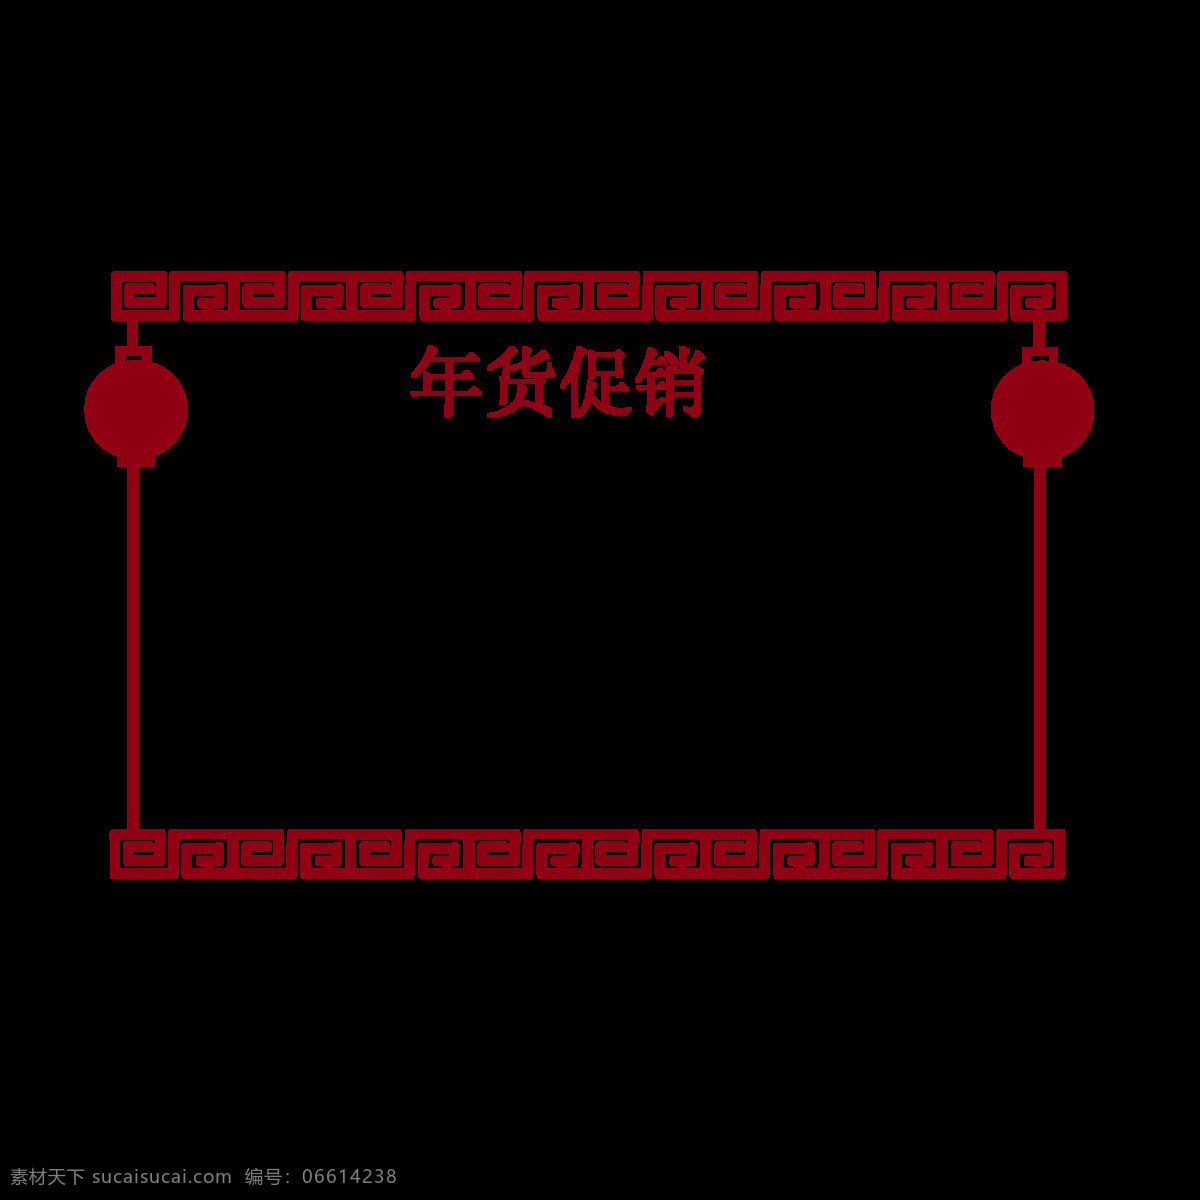 红色 灯笼 年货 促销 边框 漂亮 红色的灯笼 灯笼装饰 灯笼插画 中国 风